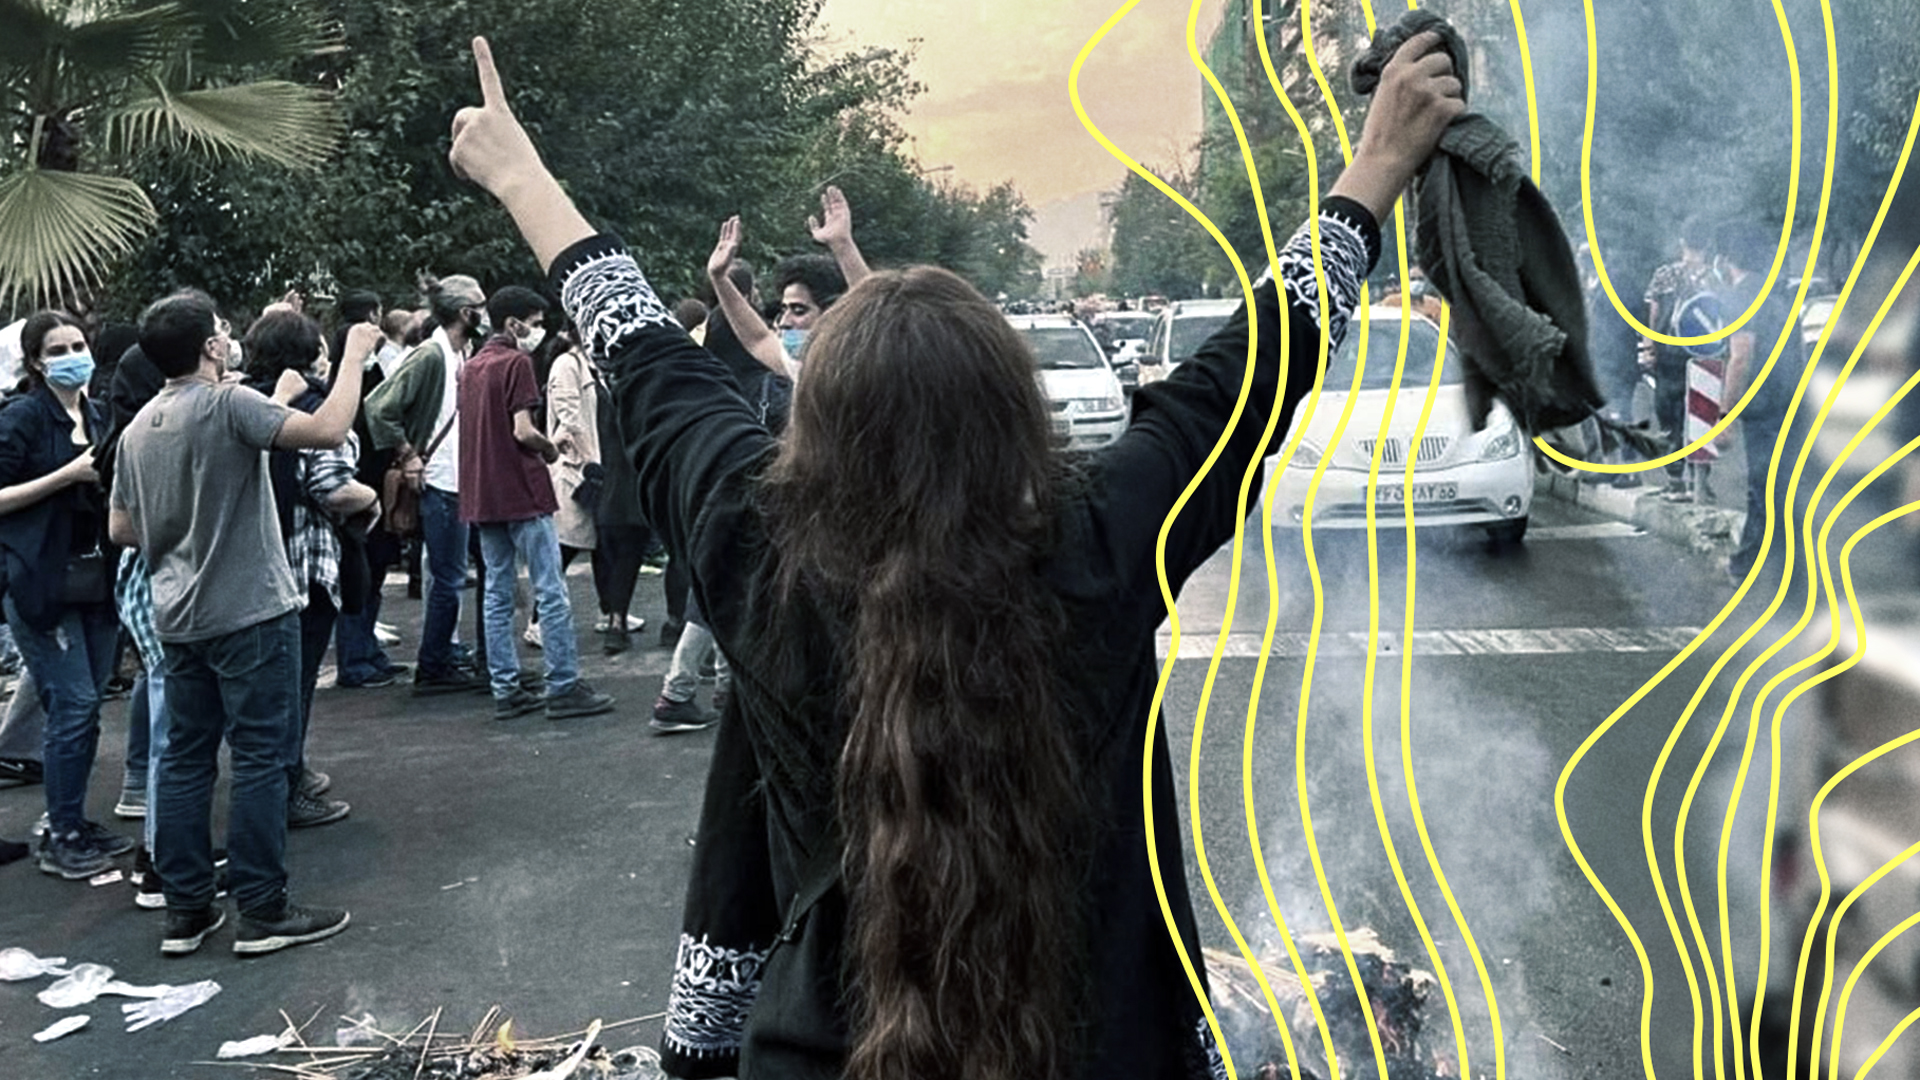 11KM-Podcast zum Iran: Quälen gegen den Protest